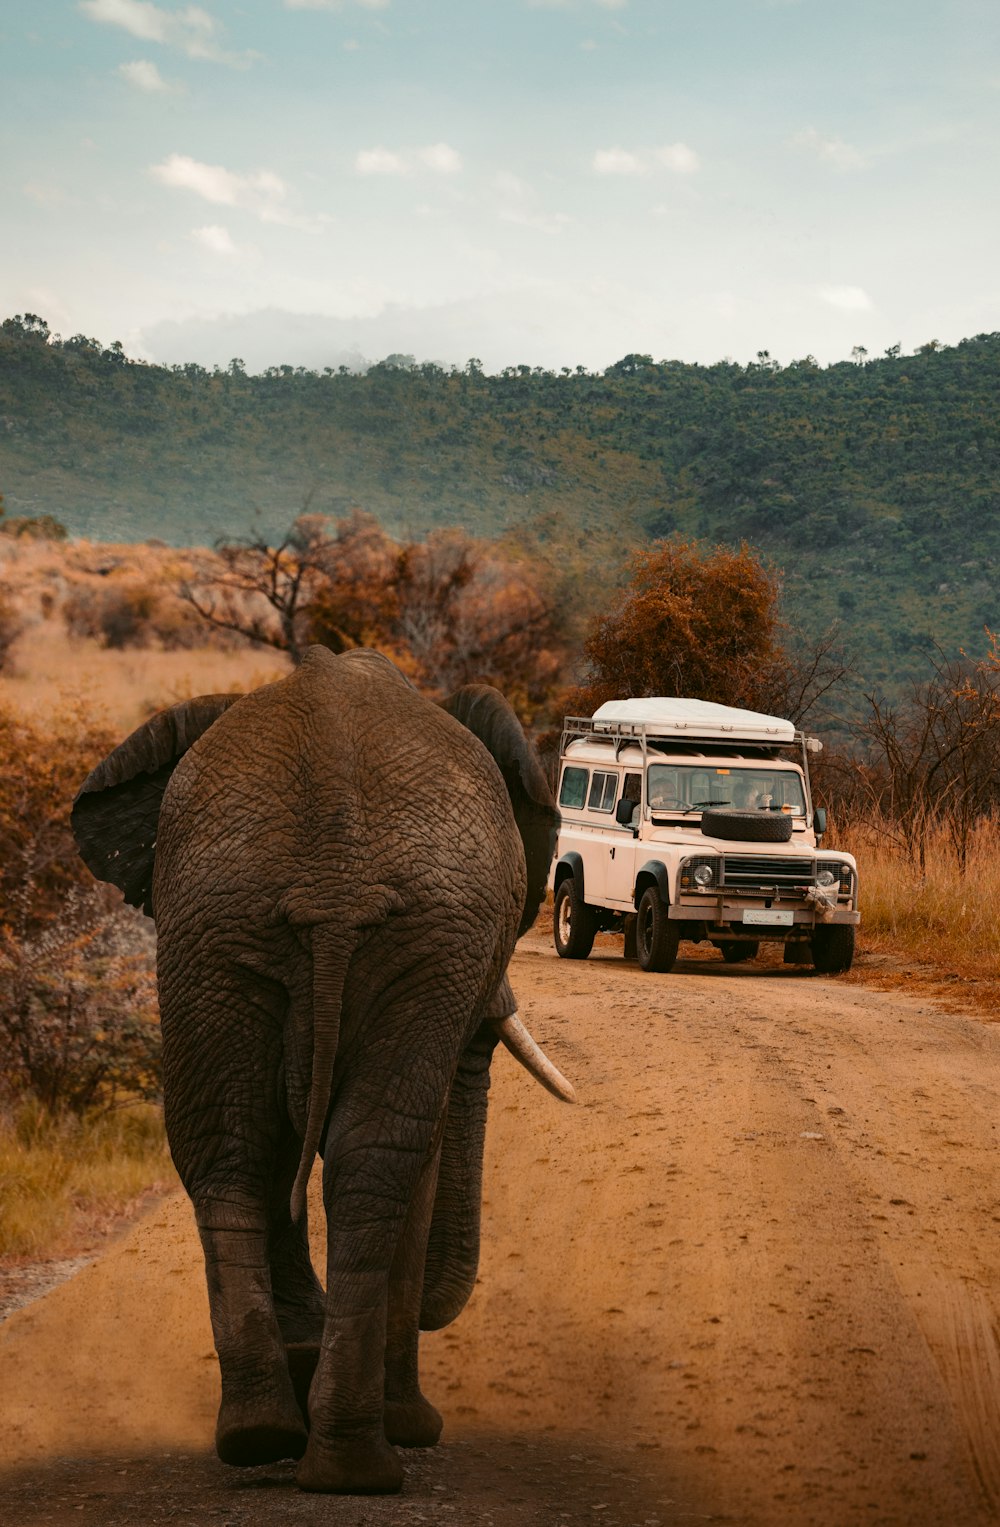 white vehicle near gray elephant